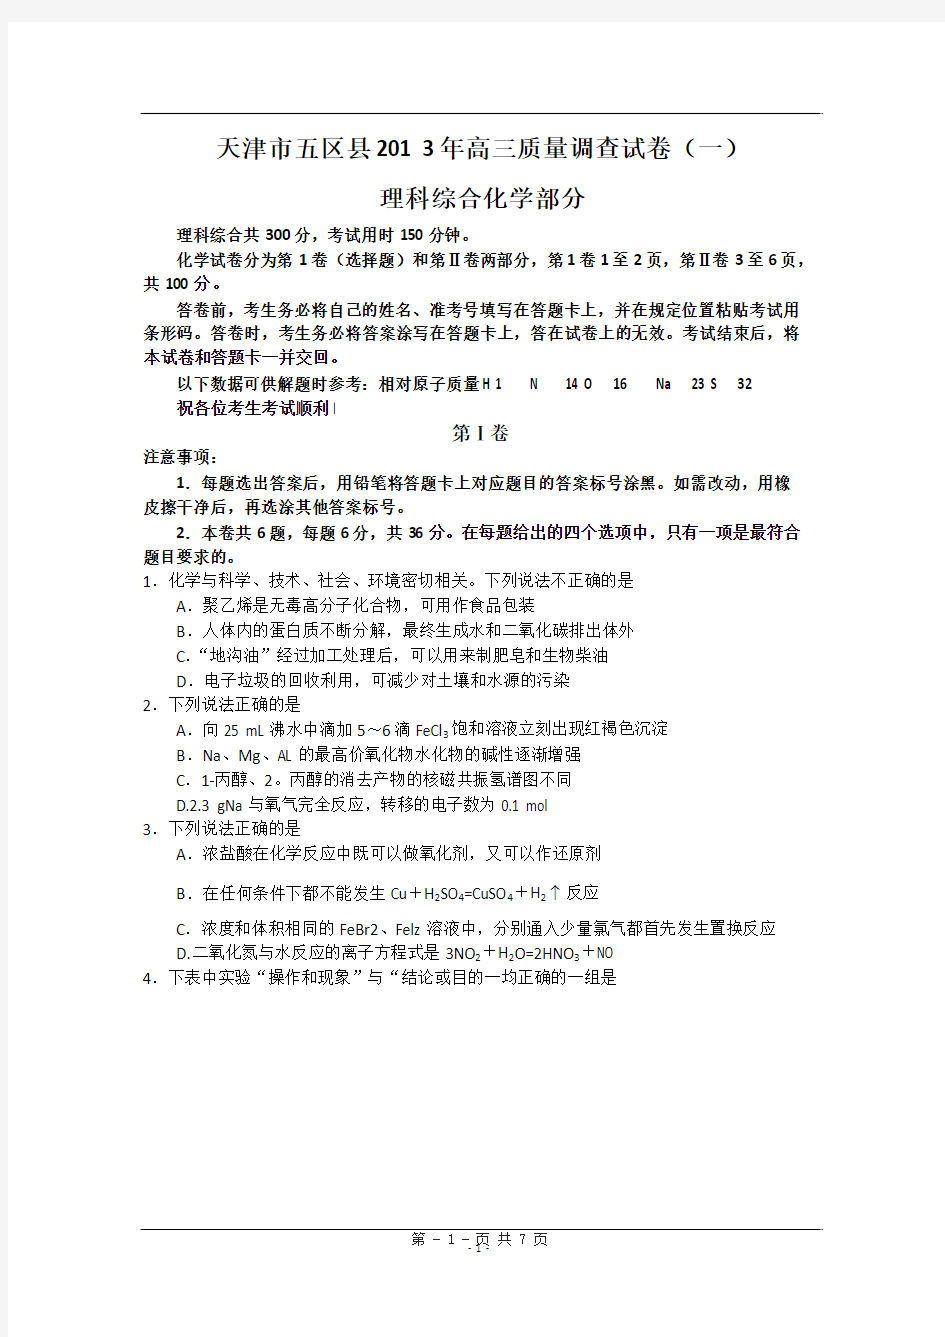 天津市五区县2013年高三质量调查化学试卷(一)及答案WORD版